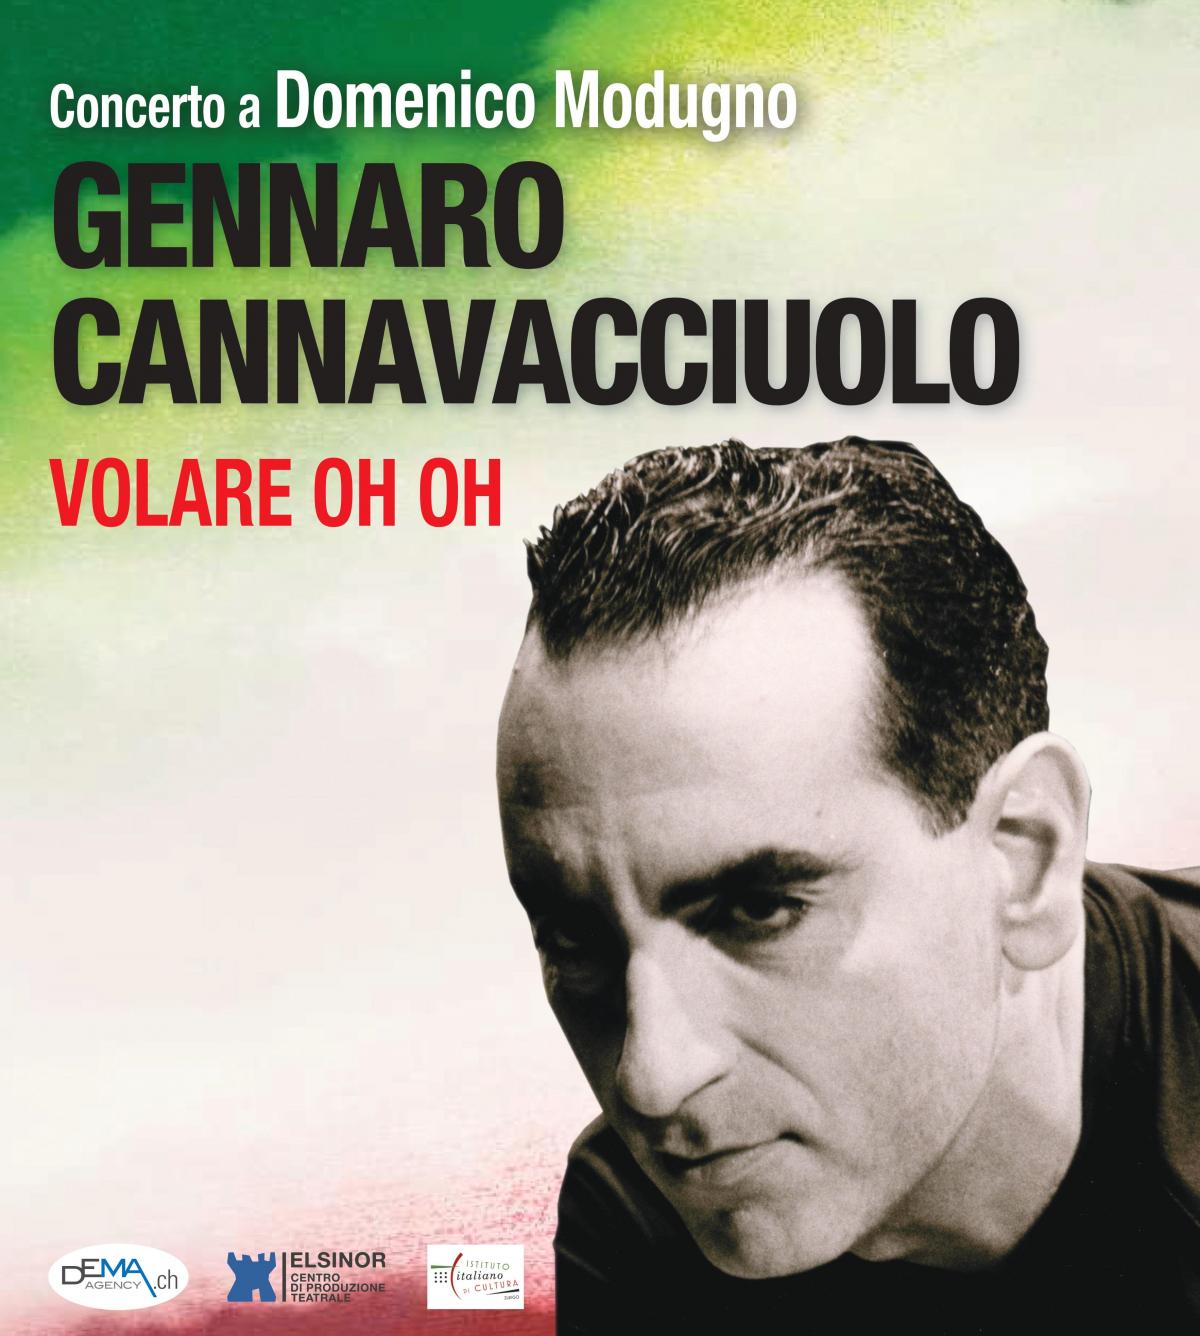 Volare - oh oh concerto a Domenico Modugno 2010-2022